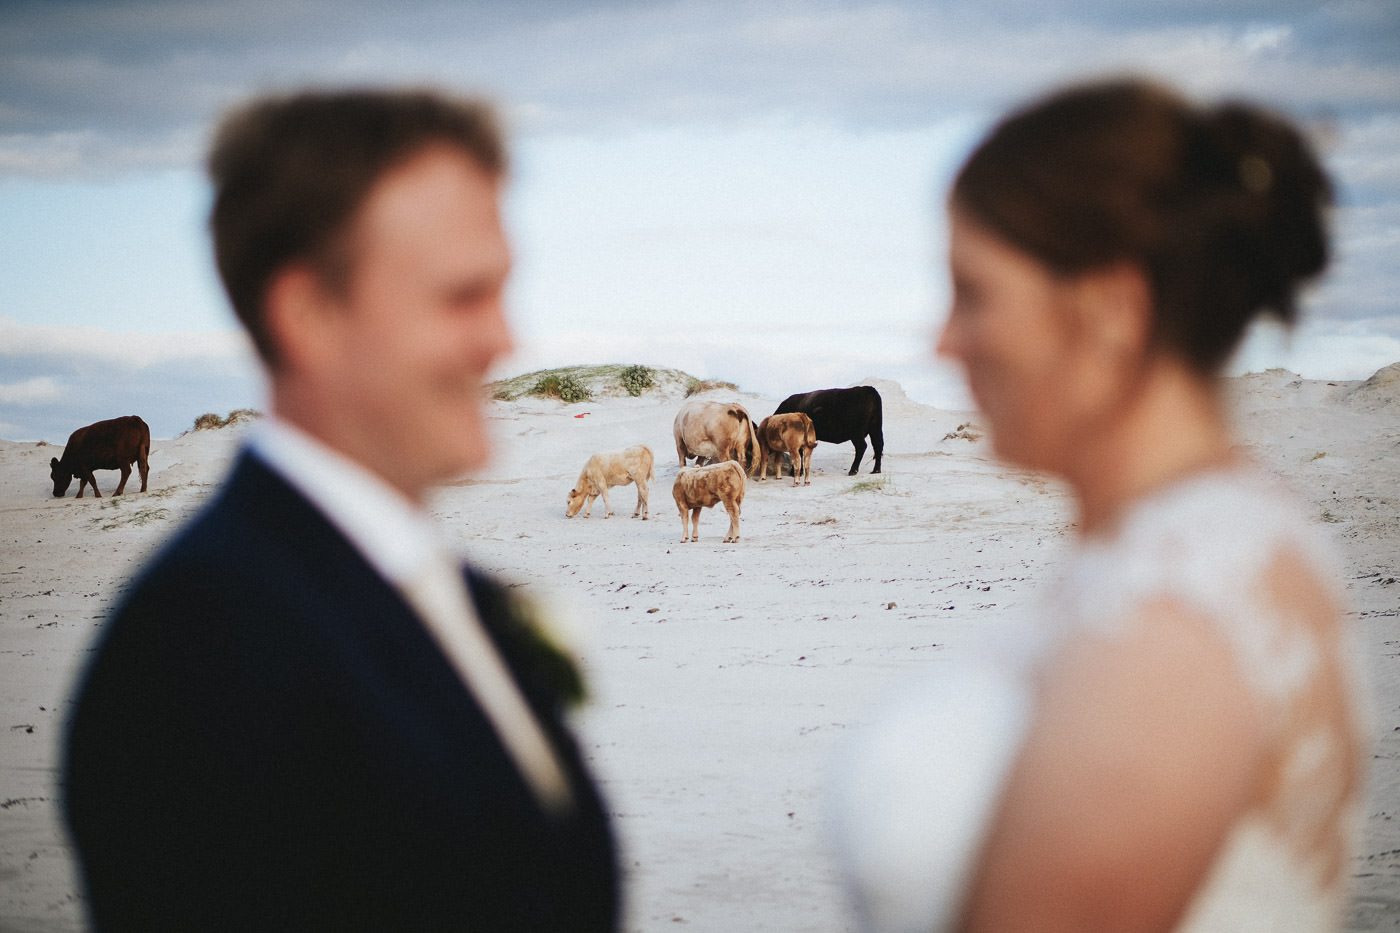 Brautpaar mit Kühen am Strand in Irland - das Paar im Vordergrund unscharf, Fokus auf die Kühe im Hintergrund, Dog's Bay, Connemara Irland - Hochzeitsfotograf Irland, Brautrausch